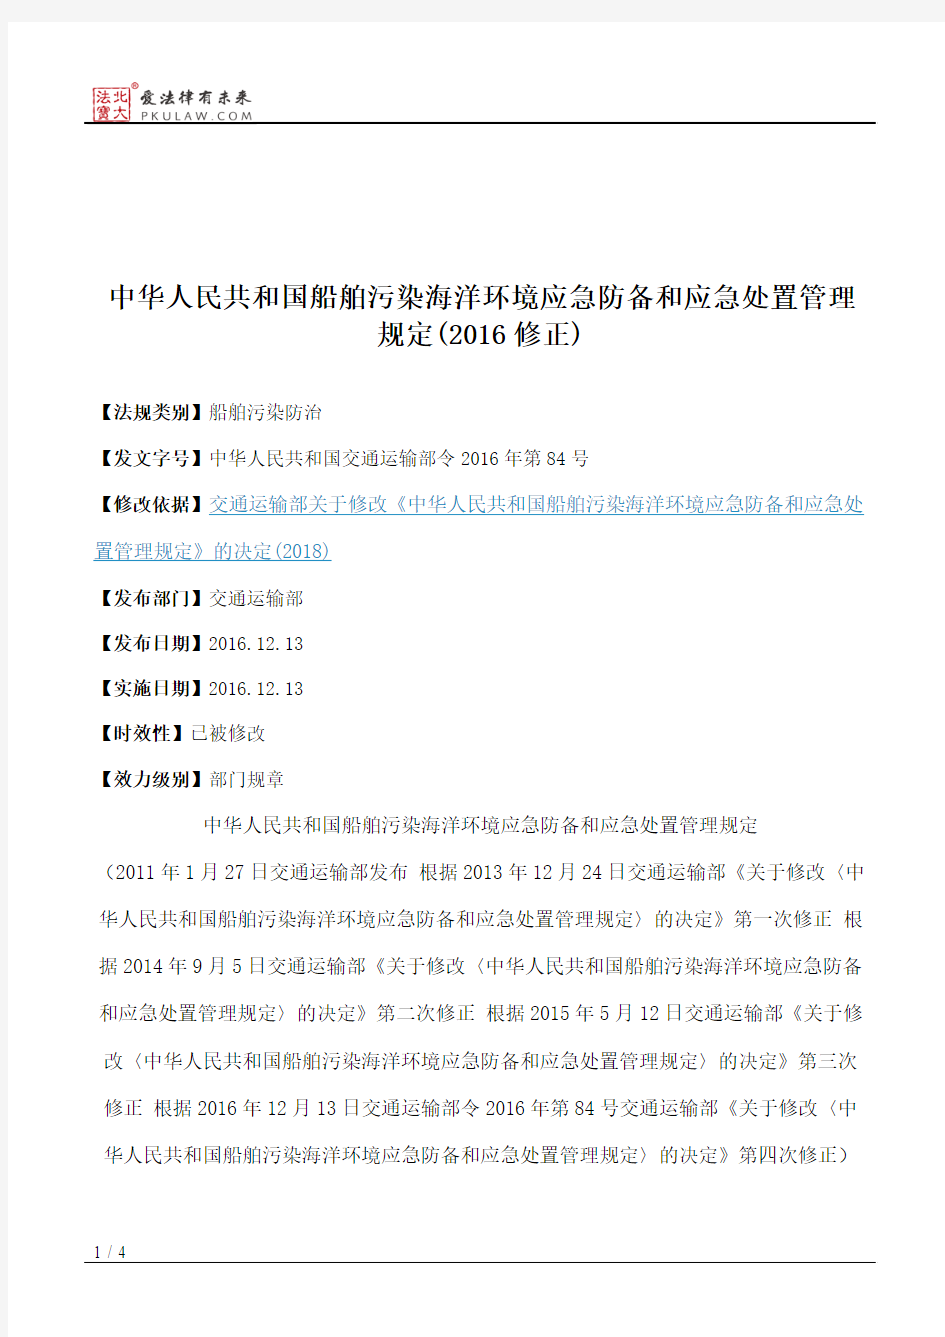 中华人民共和国船舶污染海洋环境应急防备和应急处置管理规定(2016修正)